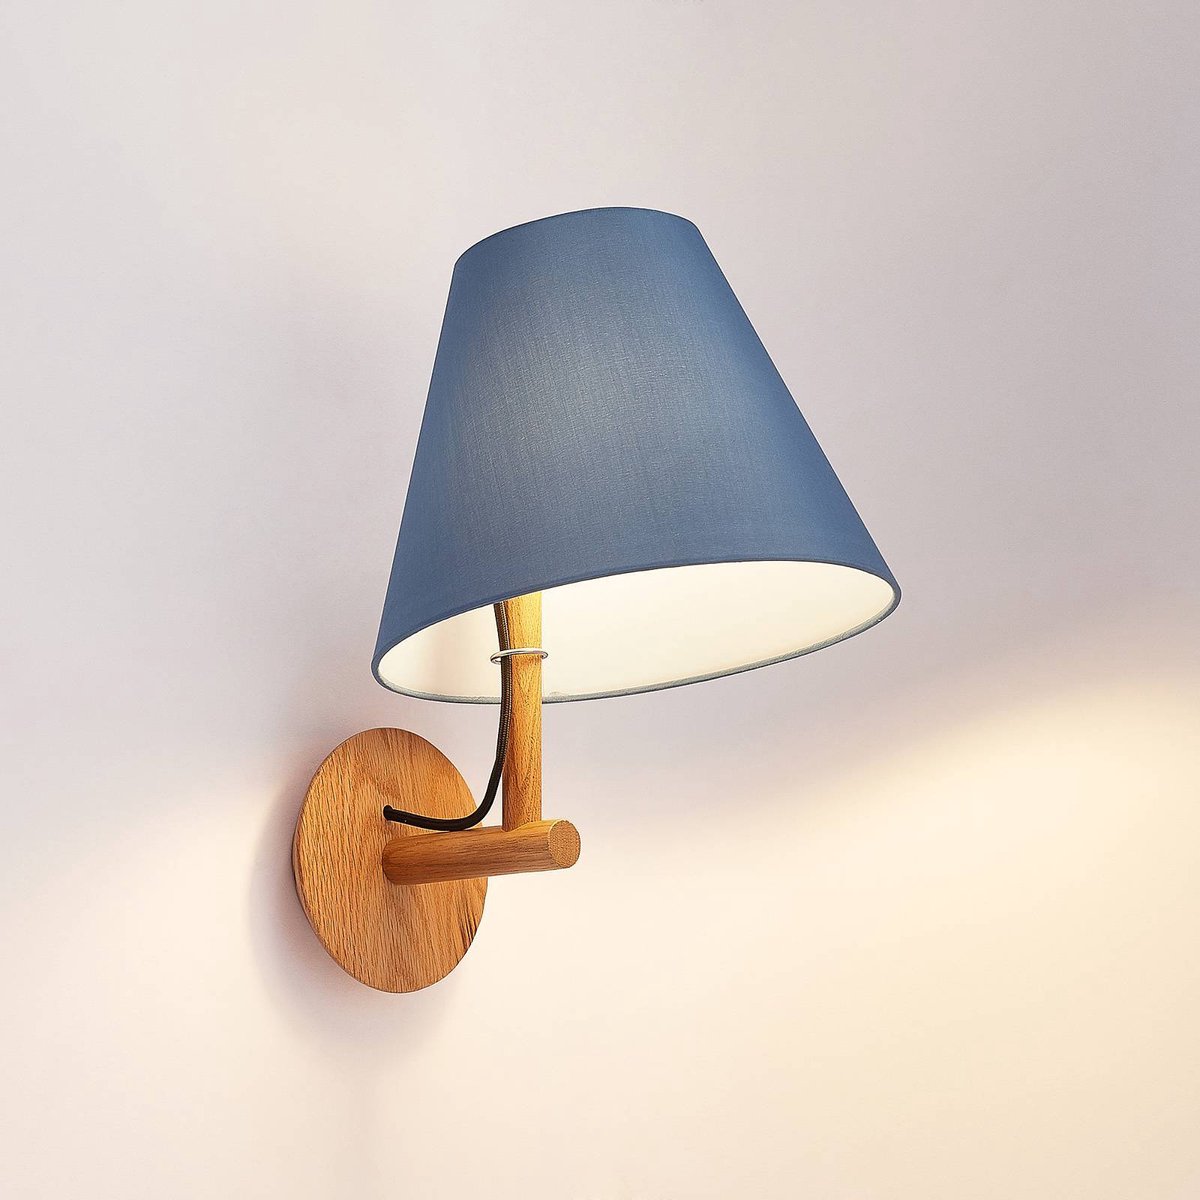 Lucande - Wandlamp - 1licht - stof, hout - H: 39.5 cm - E27 - blauw, donker eiken